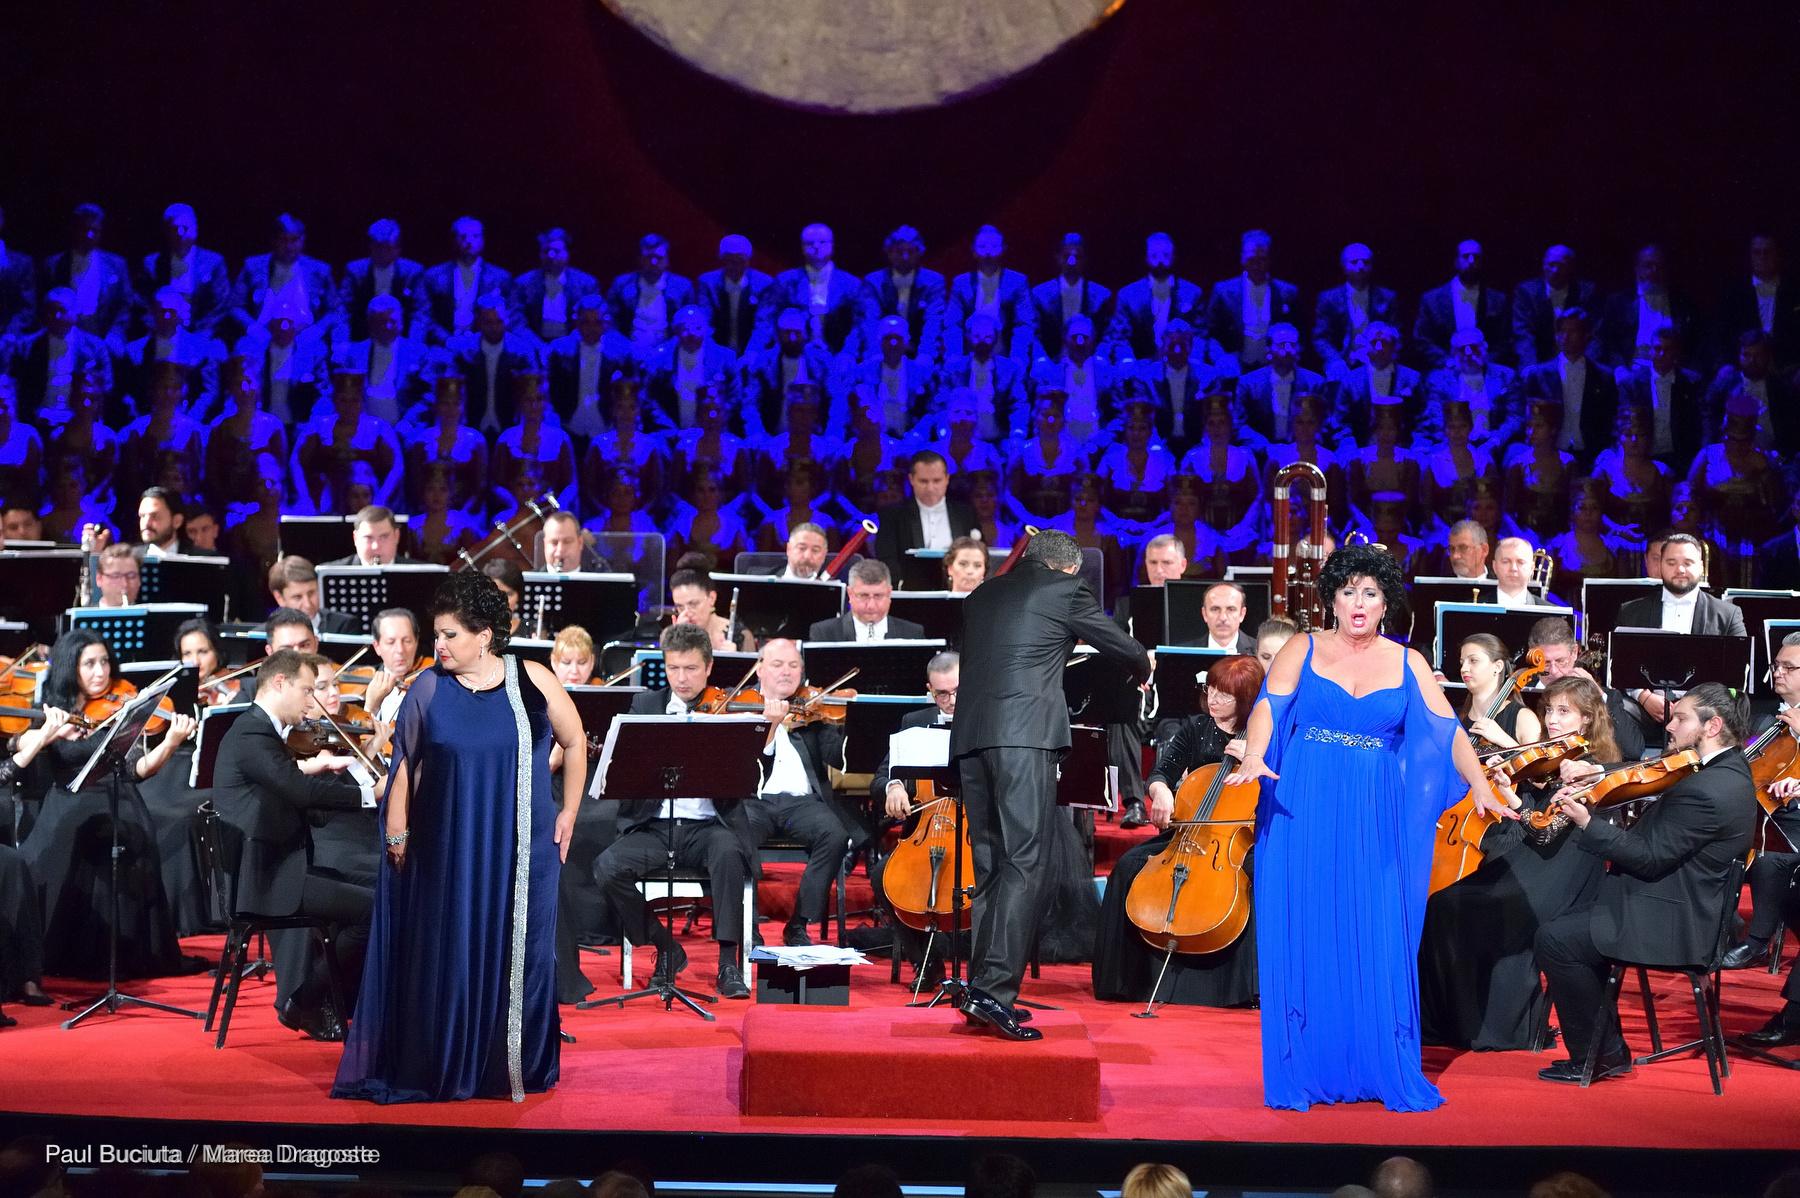 Gala Extraordinară de Operă - deschiderea stagiunii 2016-2017 la Opera Națională București